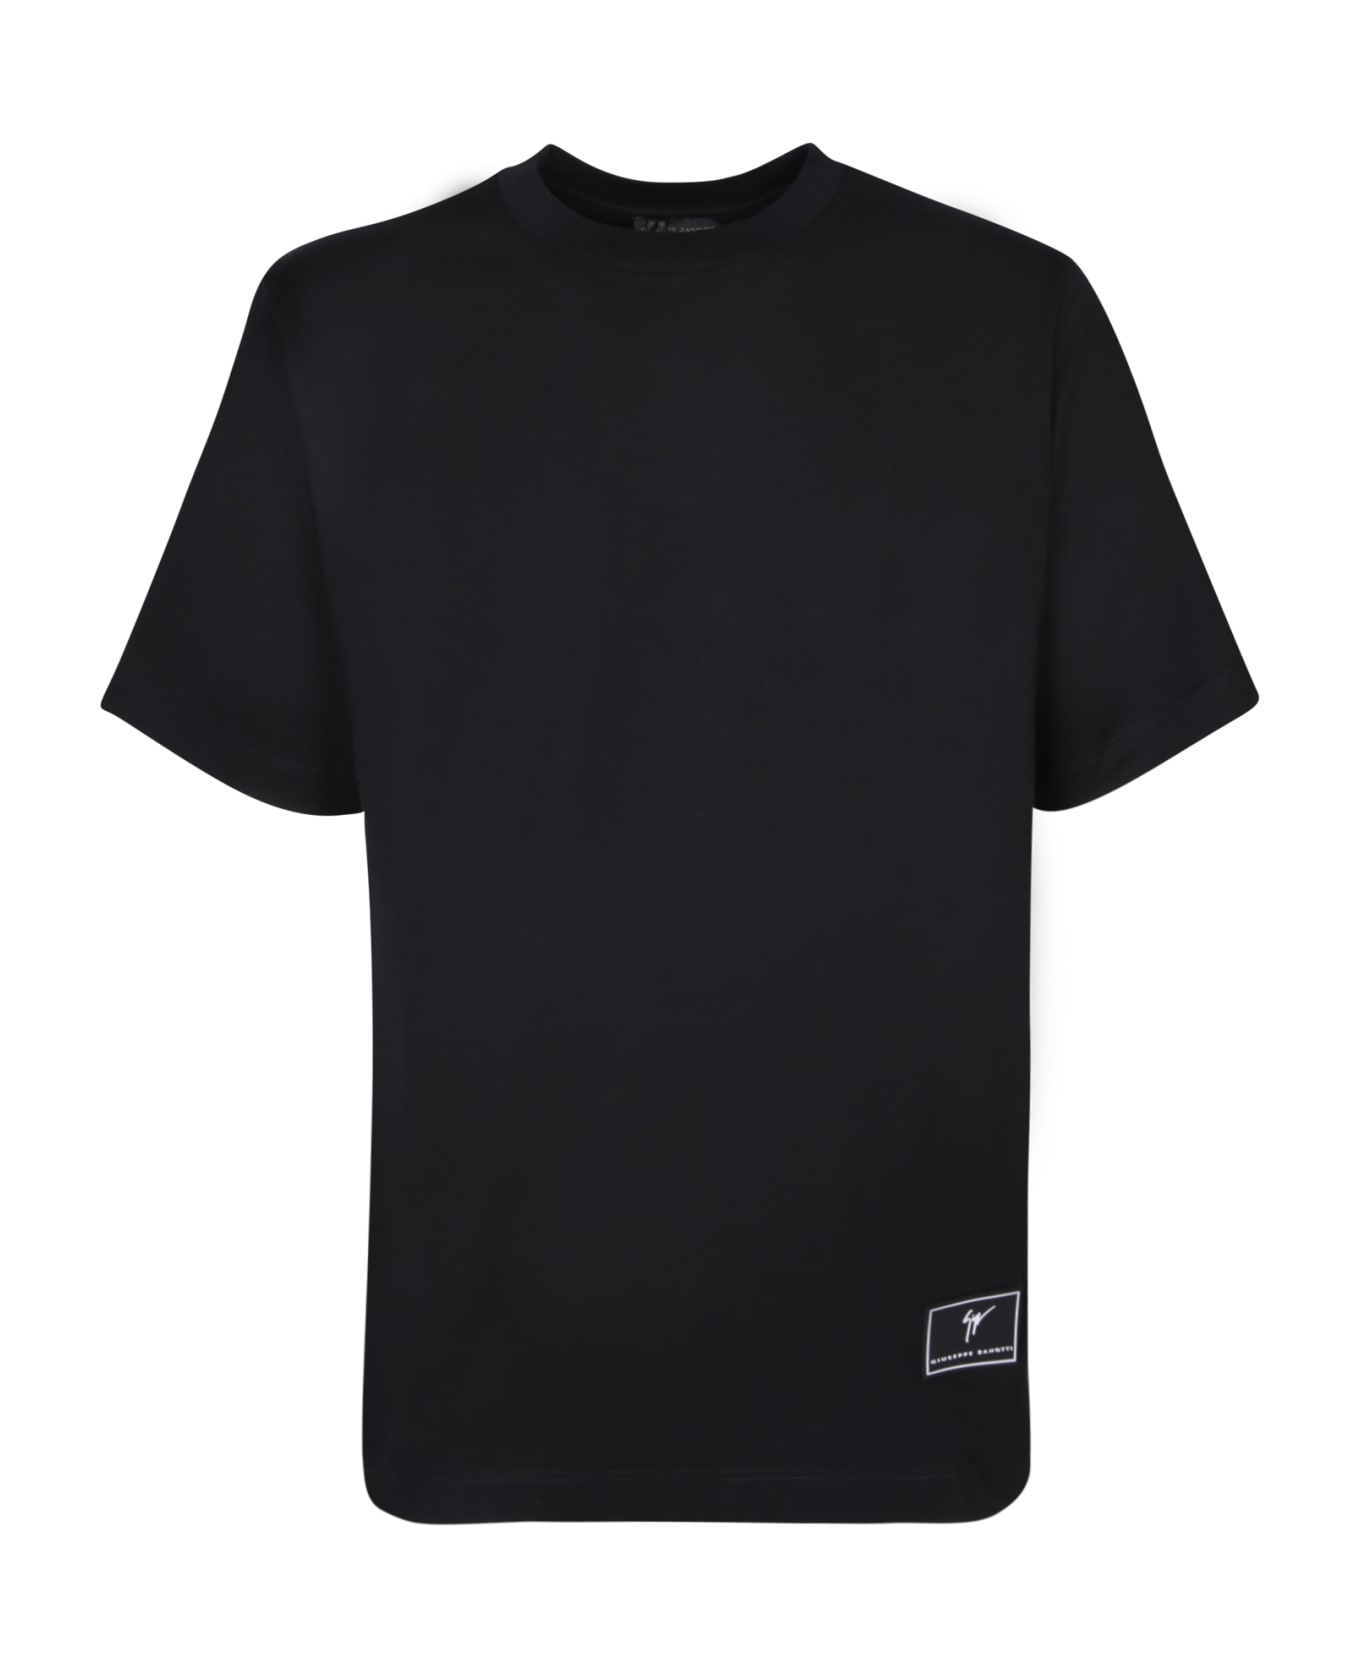 Giuseppe Zanotti Lr-58 Black T-shirt - Black